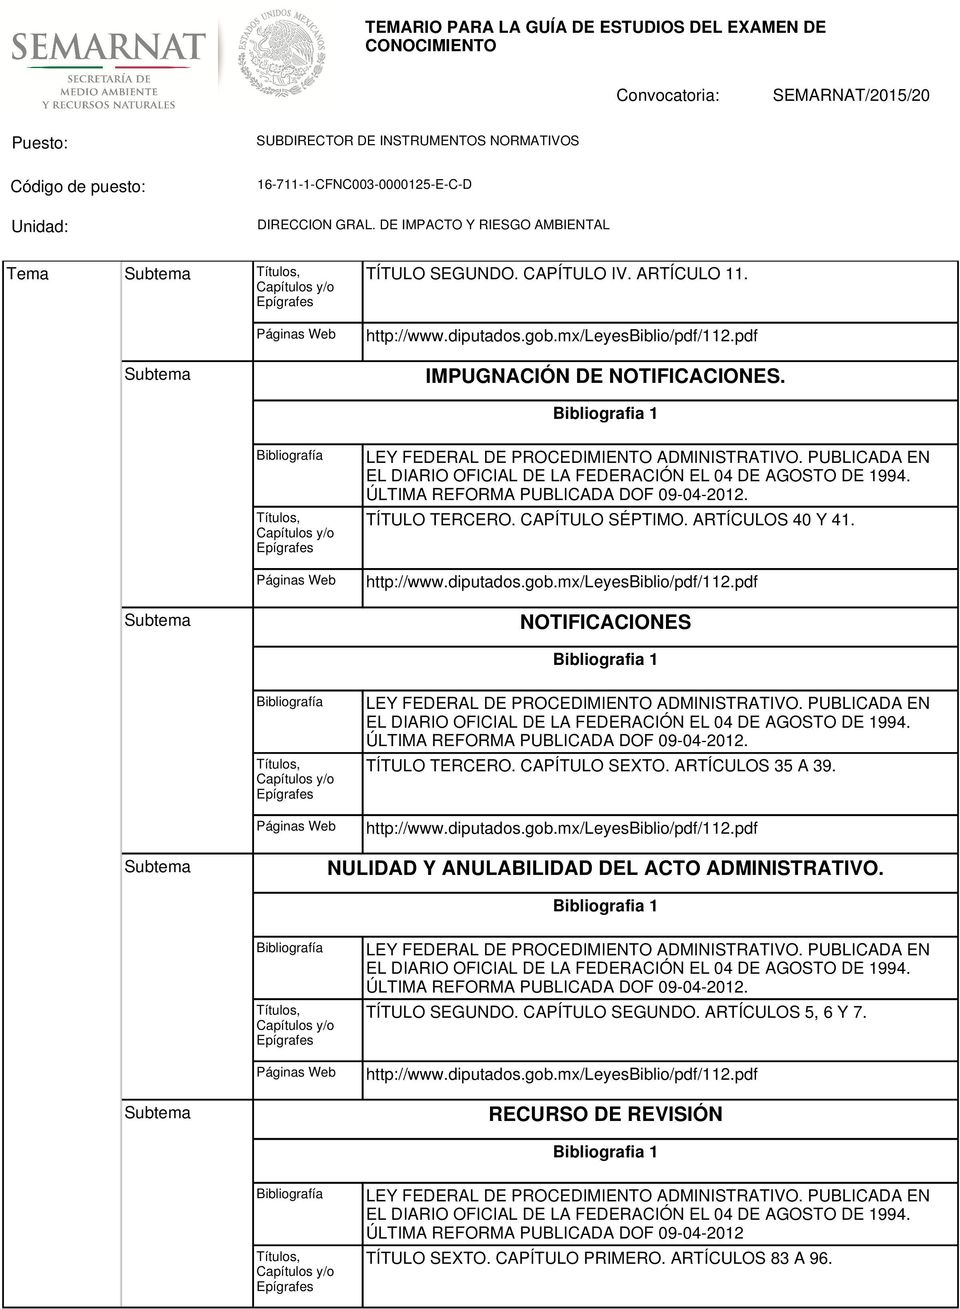 ÚLTIMA REFORMA PUBLICADA DOF 09-04-2012. TÍTULO TERCERO. CAPÍTULO SÉPTIMO. ARTÍCULOS 40 Y 41. http://www.diputados.gob.mx/leyesbiblio/pdf/112.